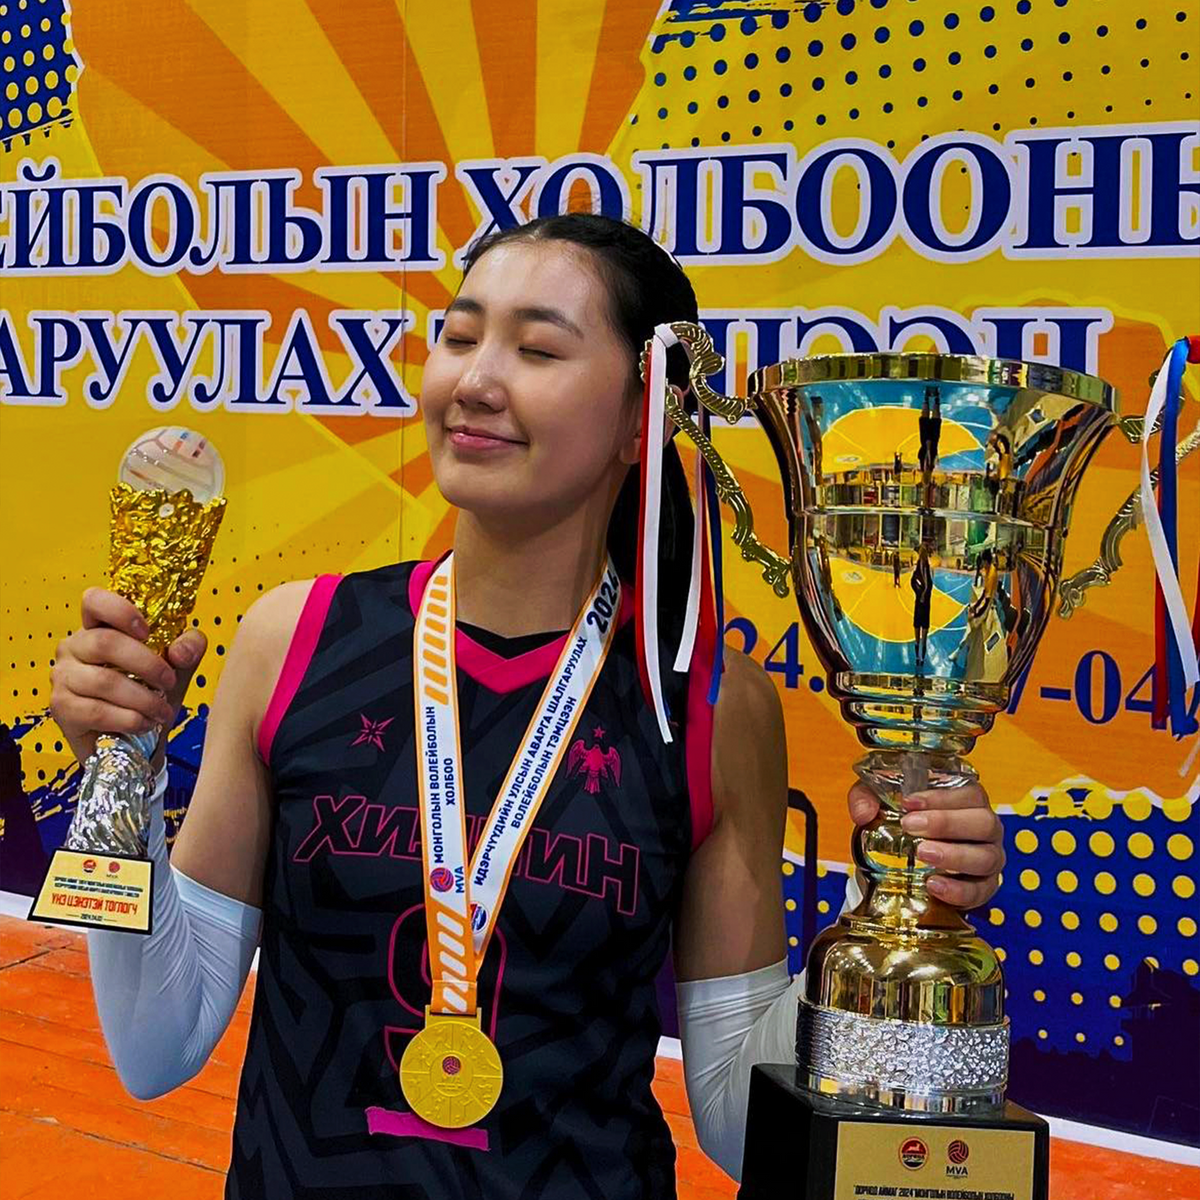 2022 оны Өсвөрийн улсын аварга алт, 2023 оны Насанд хүрэгчдийн улсын аварга, 2023 оны Зүүн азийн залуучуудын наадмын мөнгө, 2024 оны Үндэсний дээд лигийн мөнгө, 2024 оны Идэрчүүдийн улсын аварга. Цаашид Монгол улсын шигшээ багт тоглож амжилт гаргахыг хүсдэг.